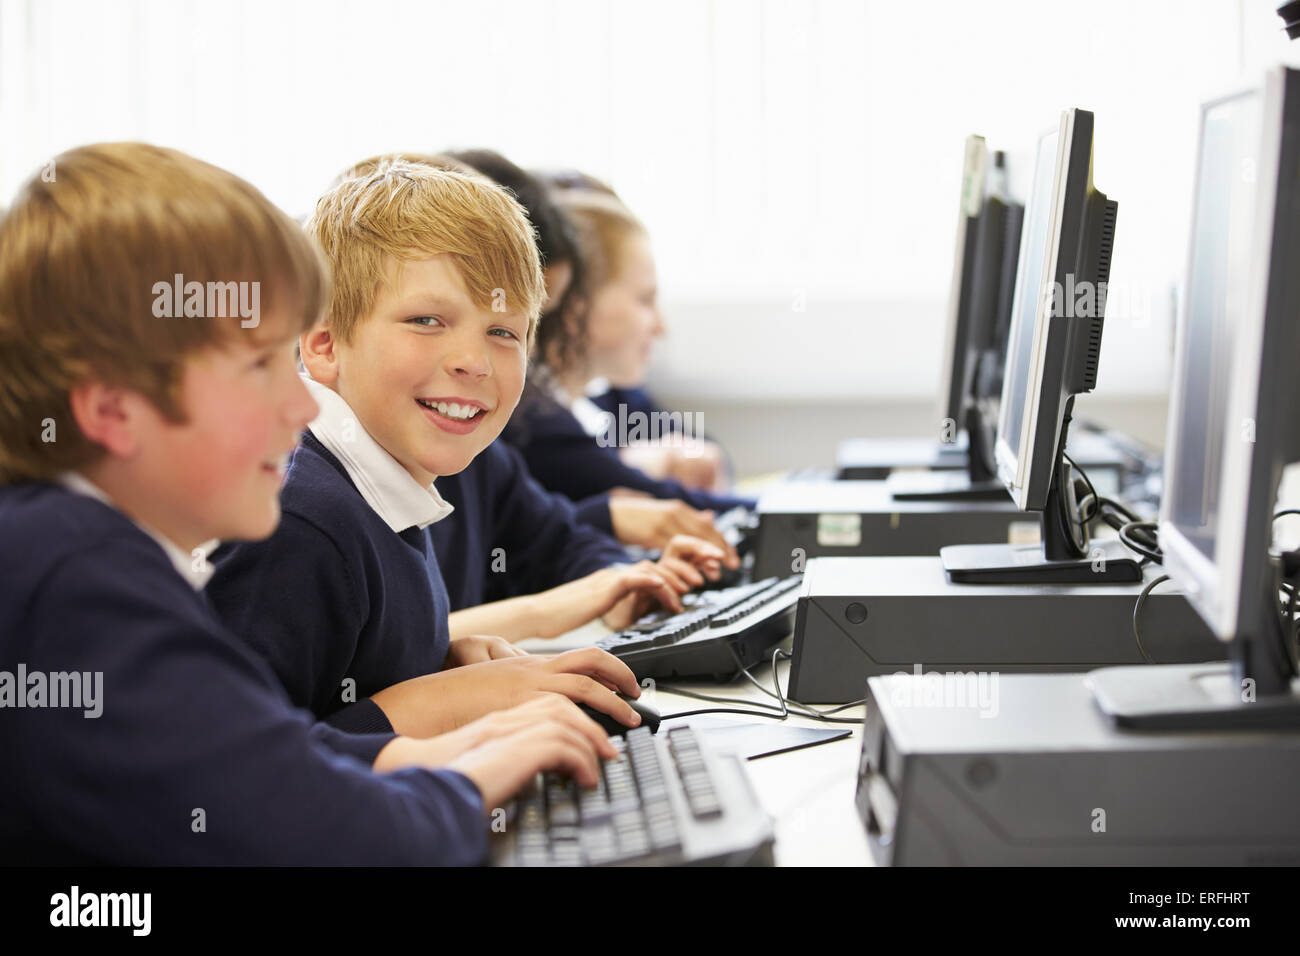 Line Of Children In School Computer Class Stock Photo